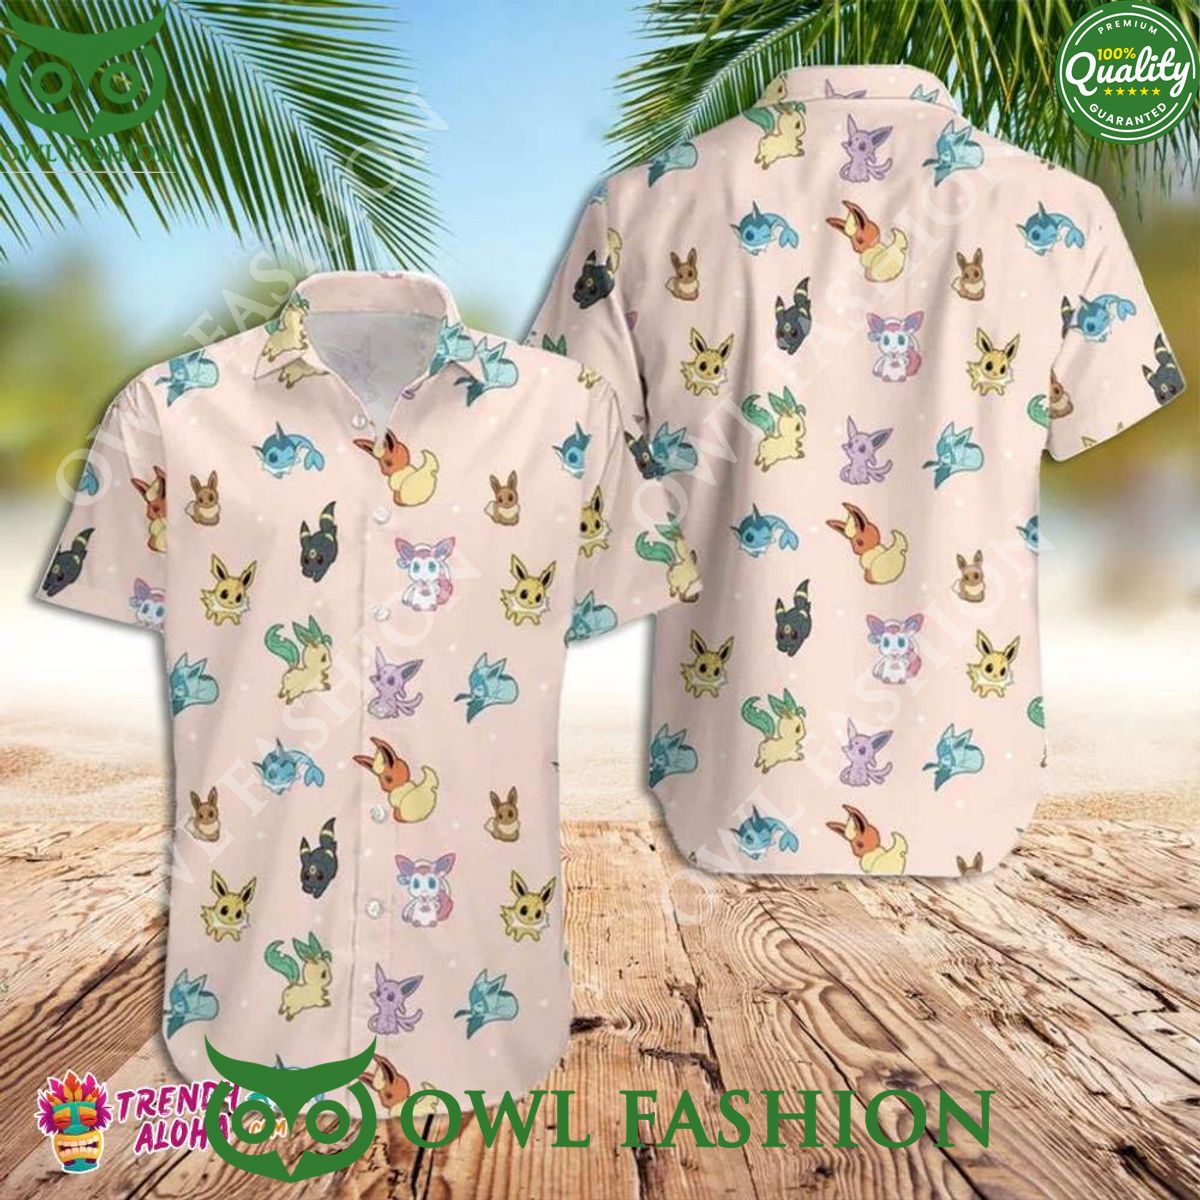 eevee evolution pokemon summer holiday hawaiian shirt 1 Yywp9.jpg